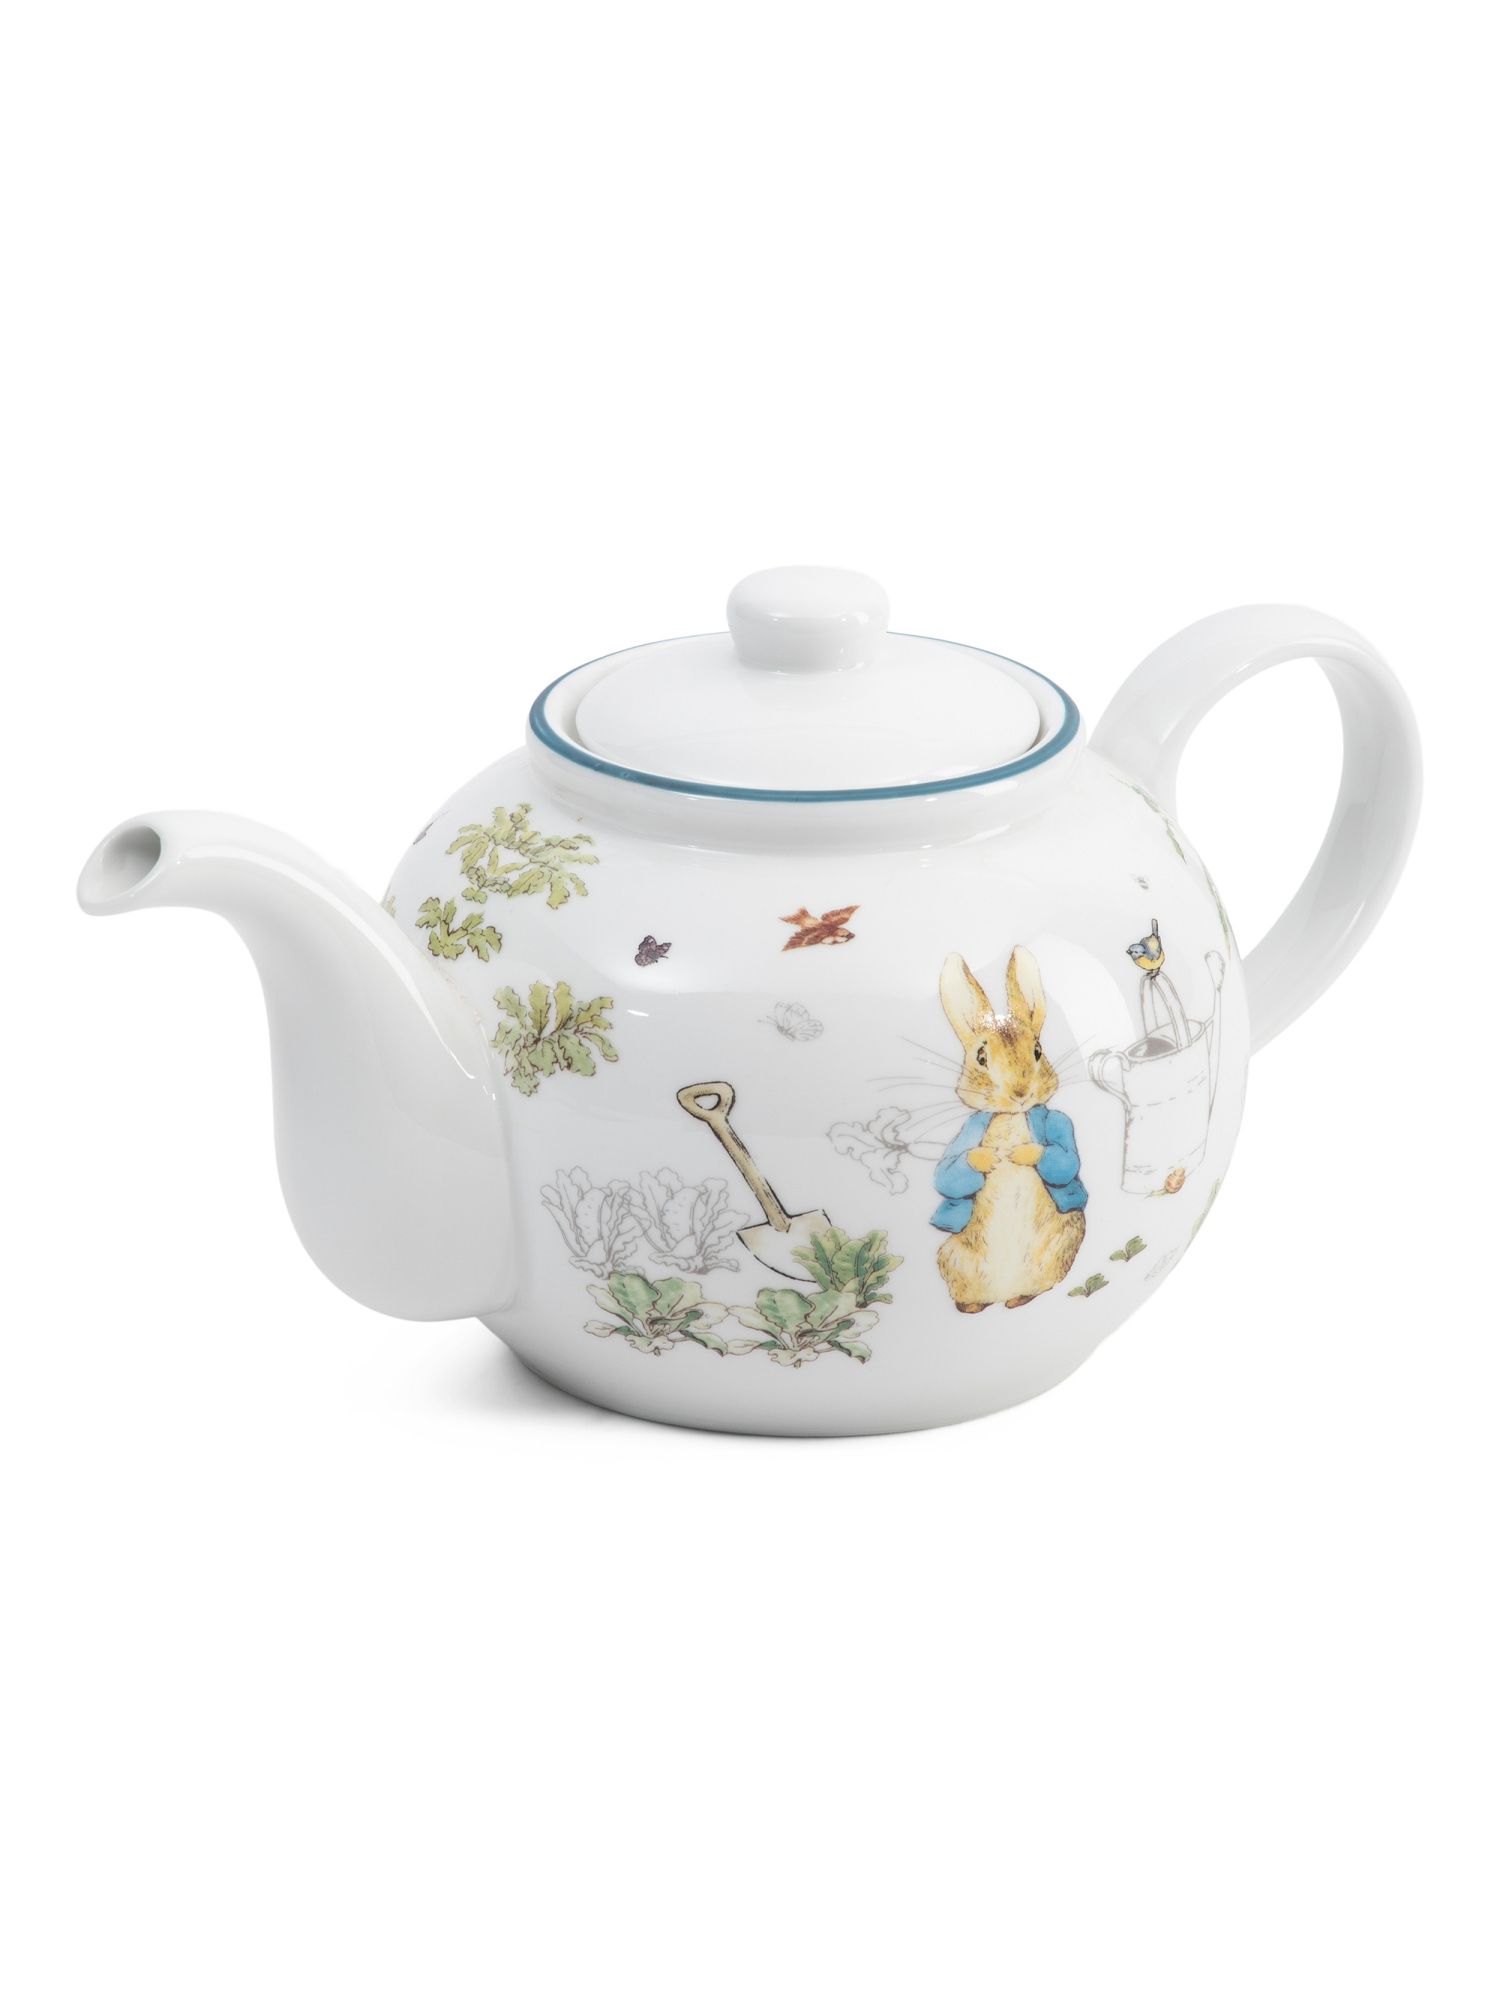 Peter Rabbit Classic Tea Pot | TJ Maxx